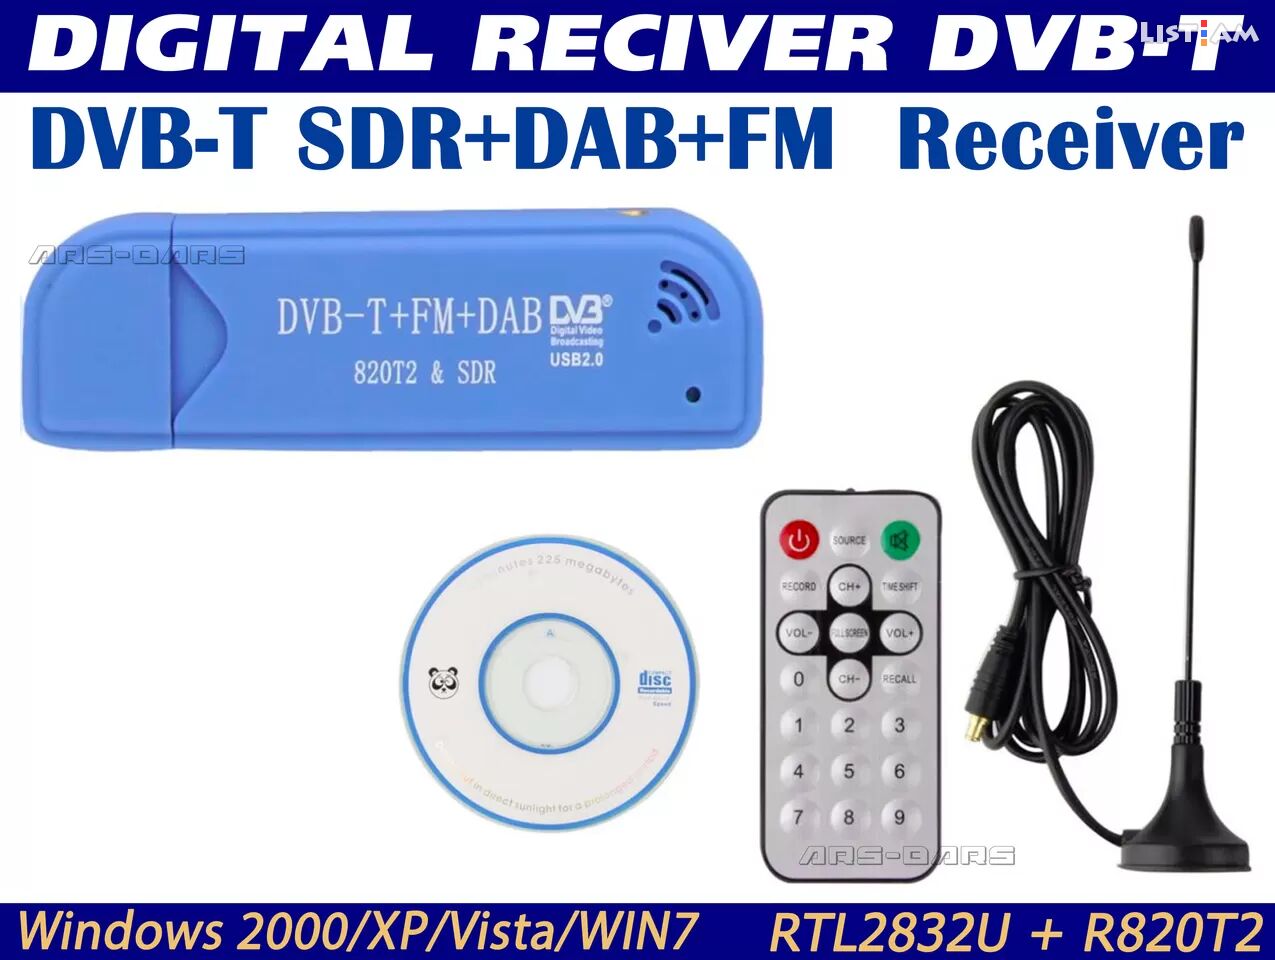 DVB-T SDR + DAB + DM